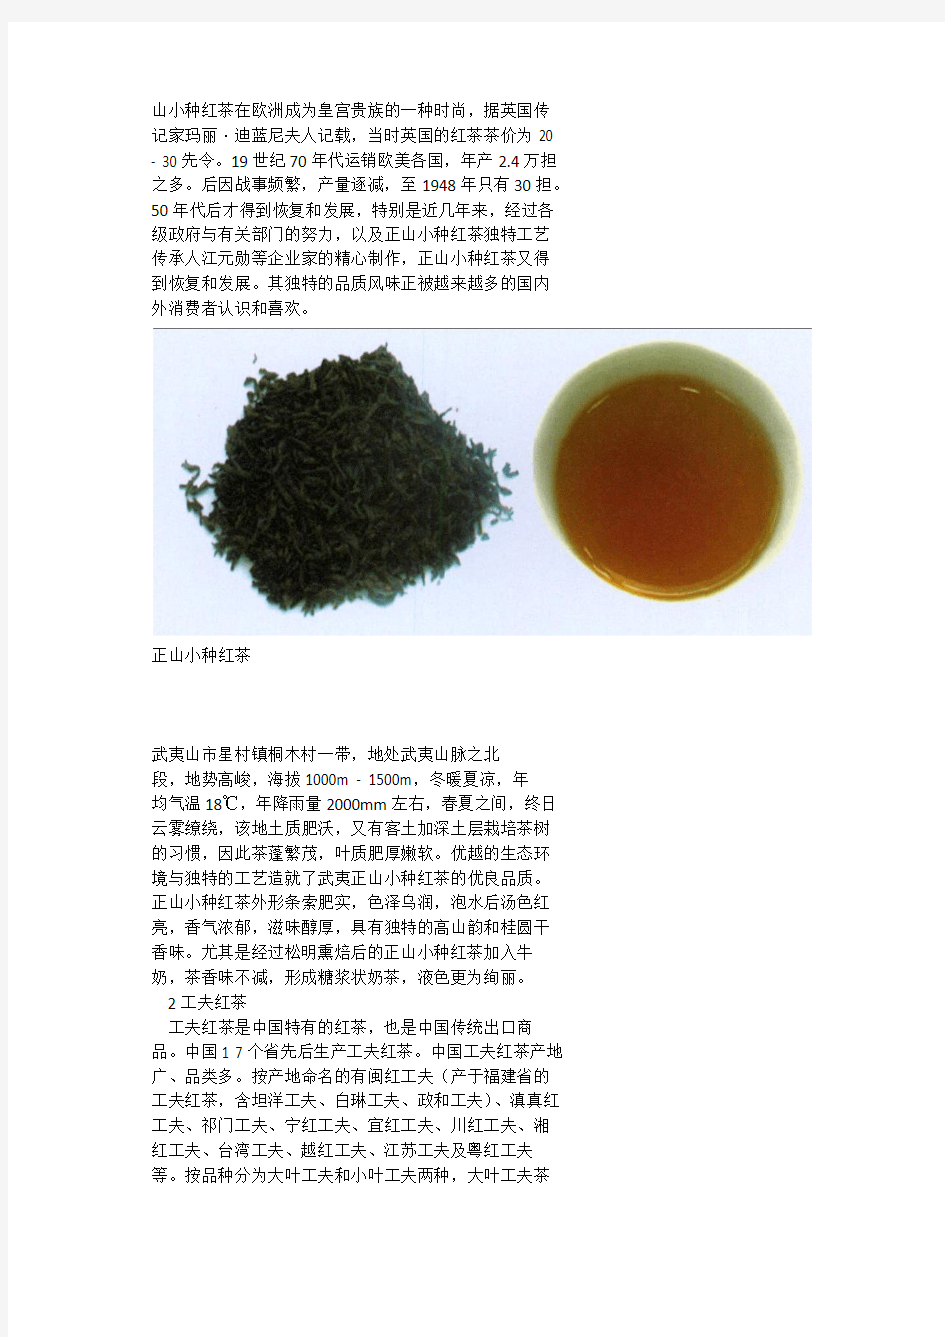 福建红茶的发展历程及其品质特征